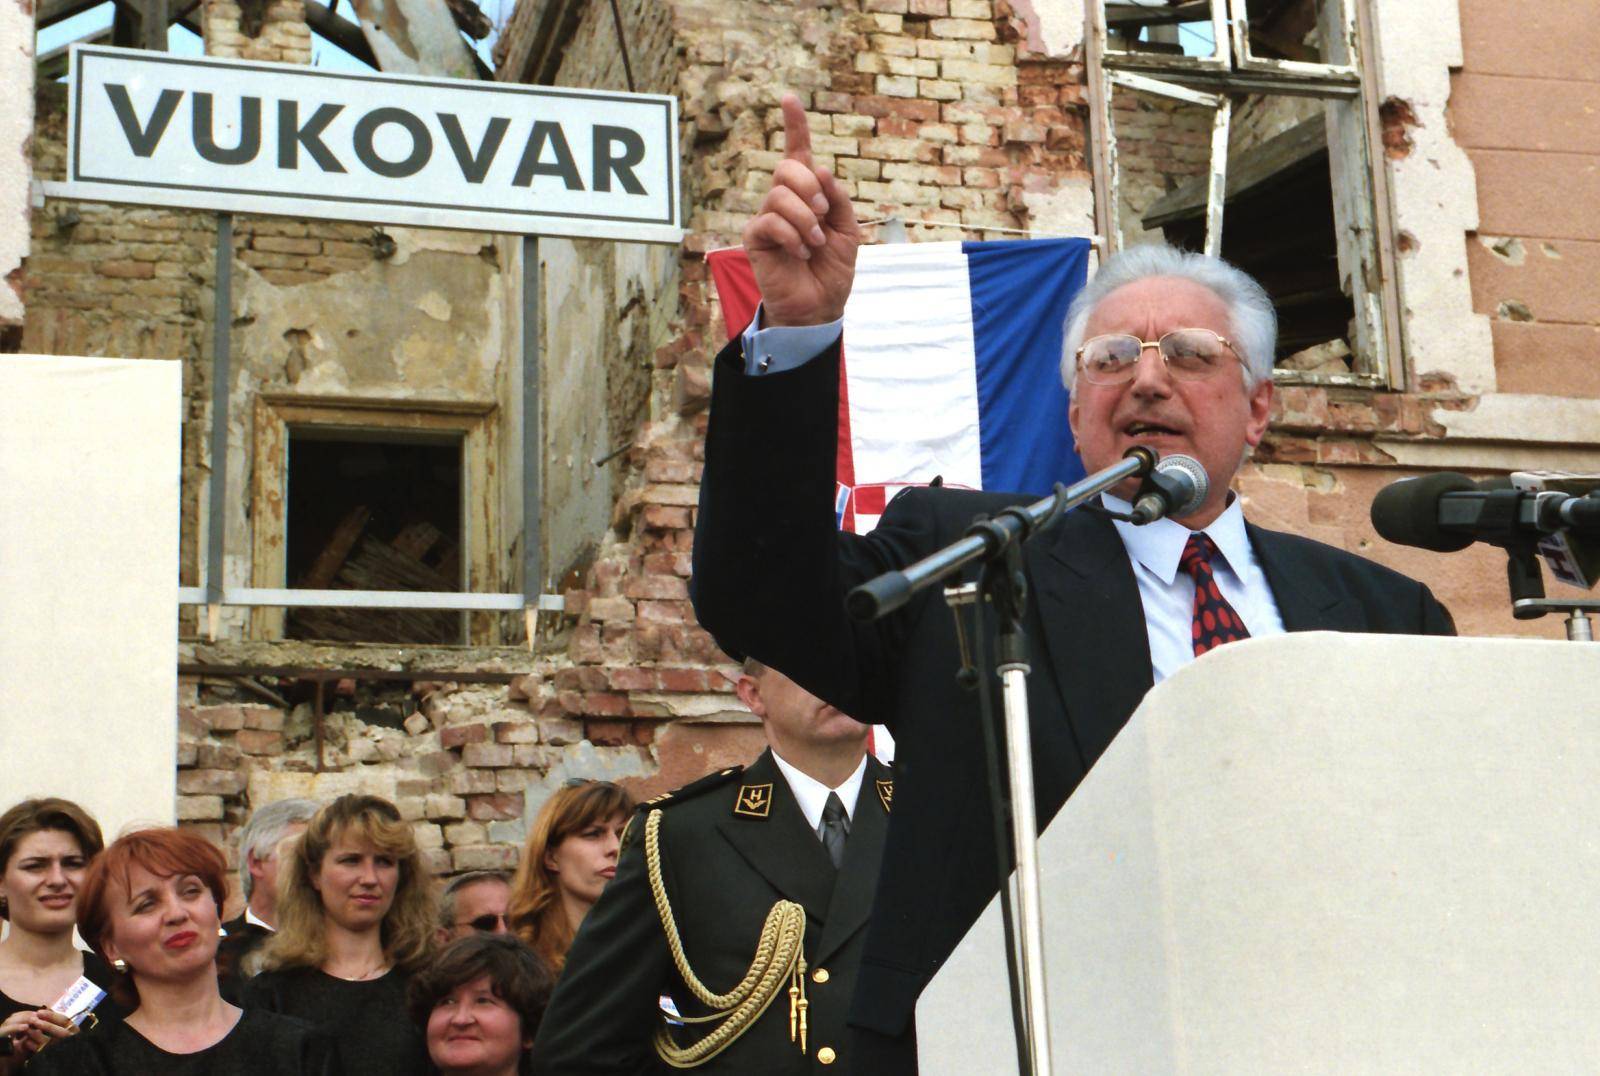 Povratak u napaćeni grad heroj: Vlak mira krenuo je za Vukovar, pjevalo se i klicalo slobodi...